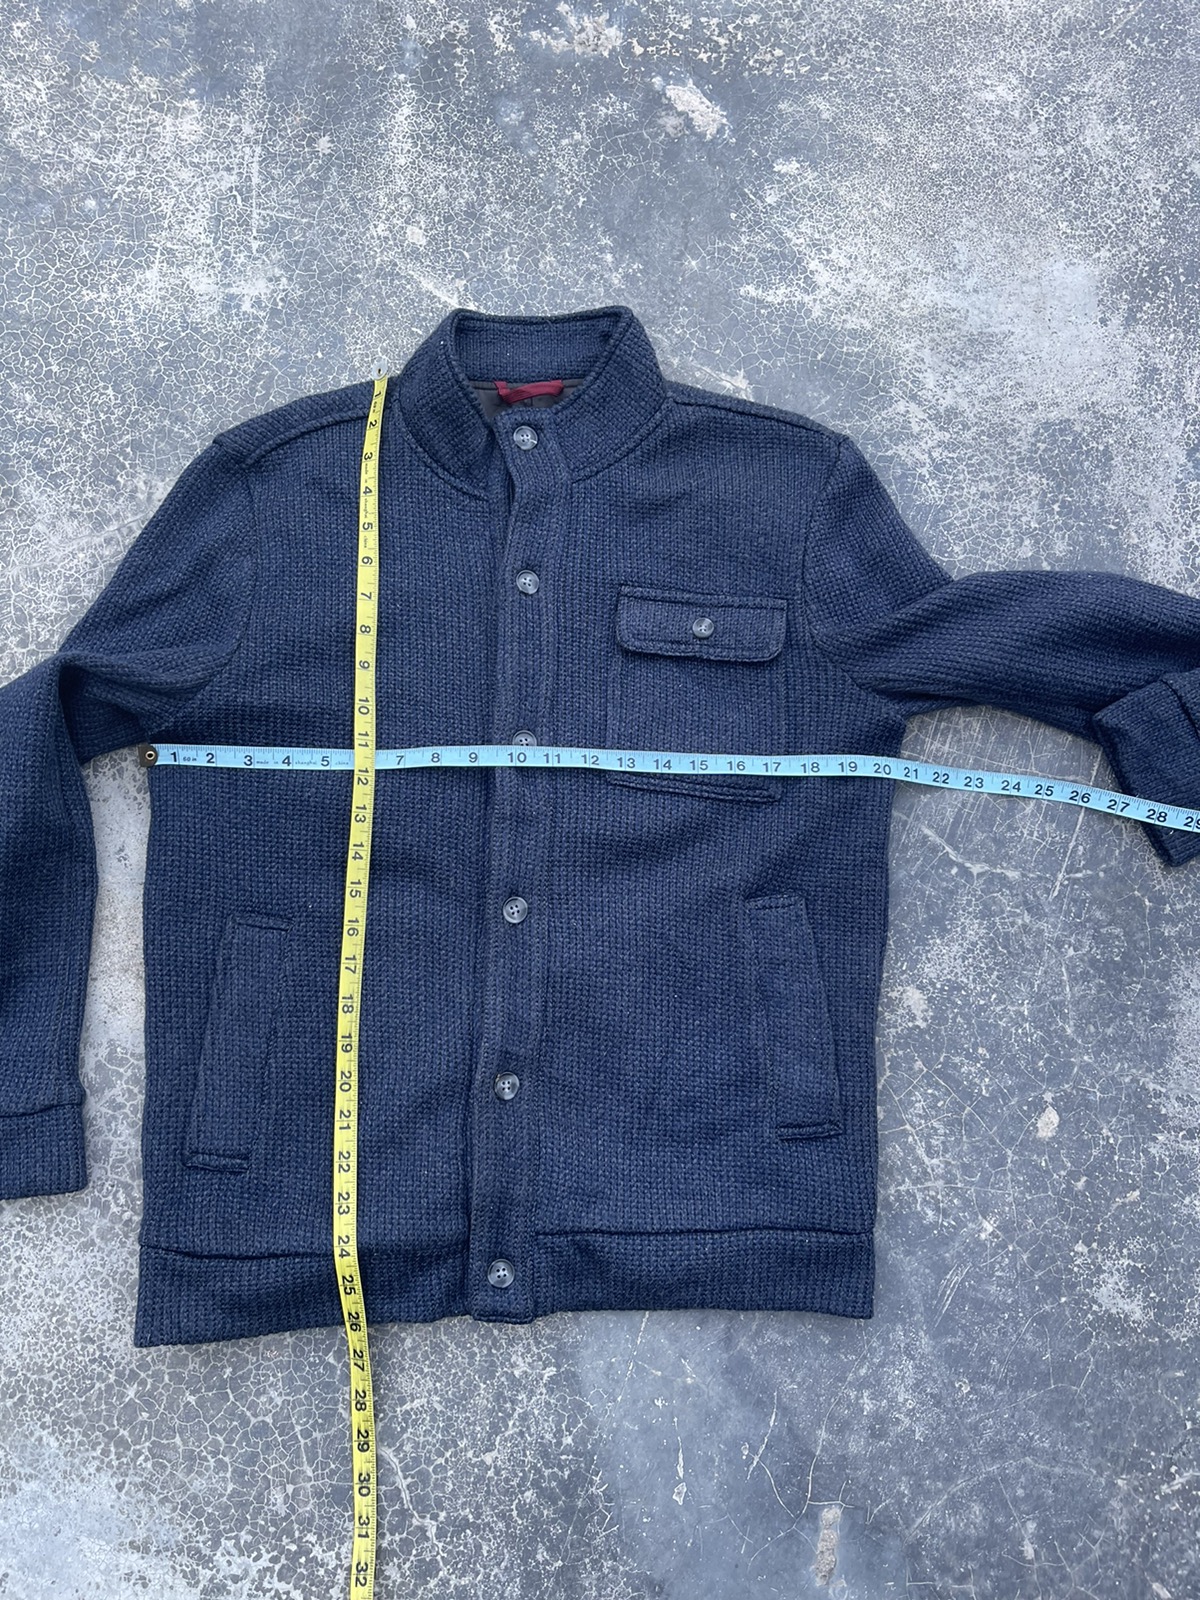 Kansai Yamamoto - Kansai Yamamoto Knitted wool light jacket - 5